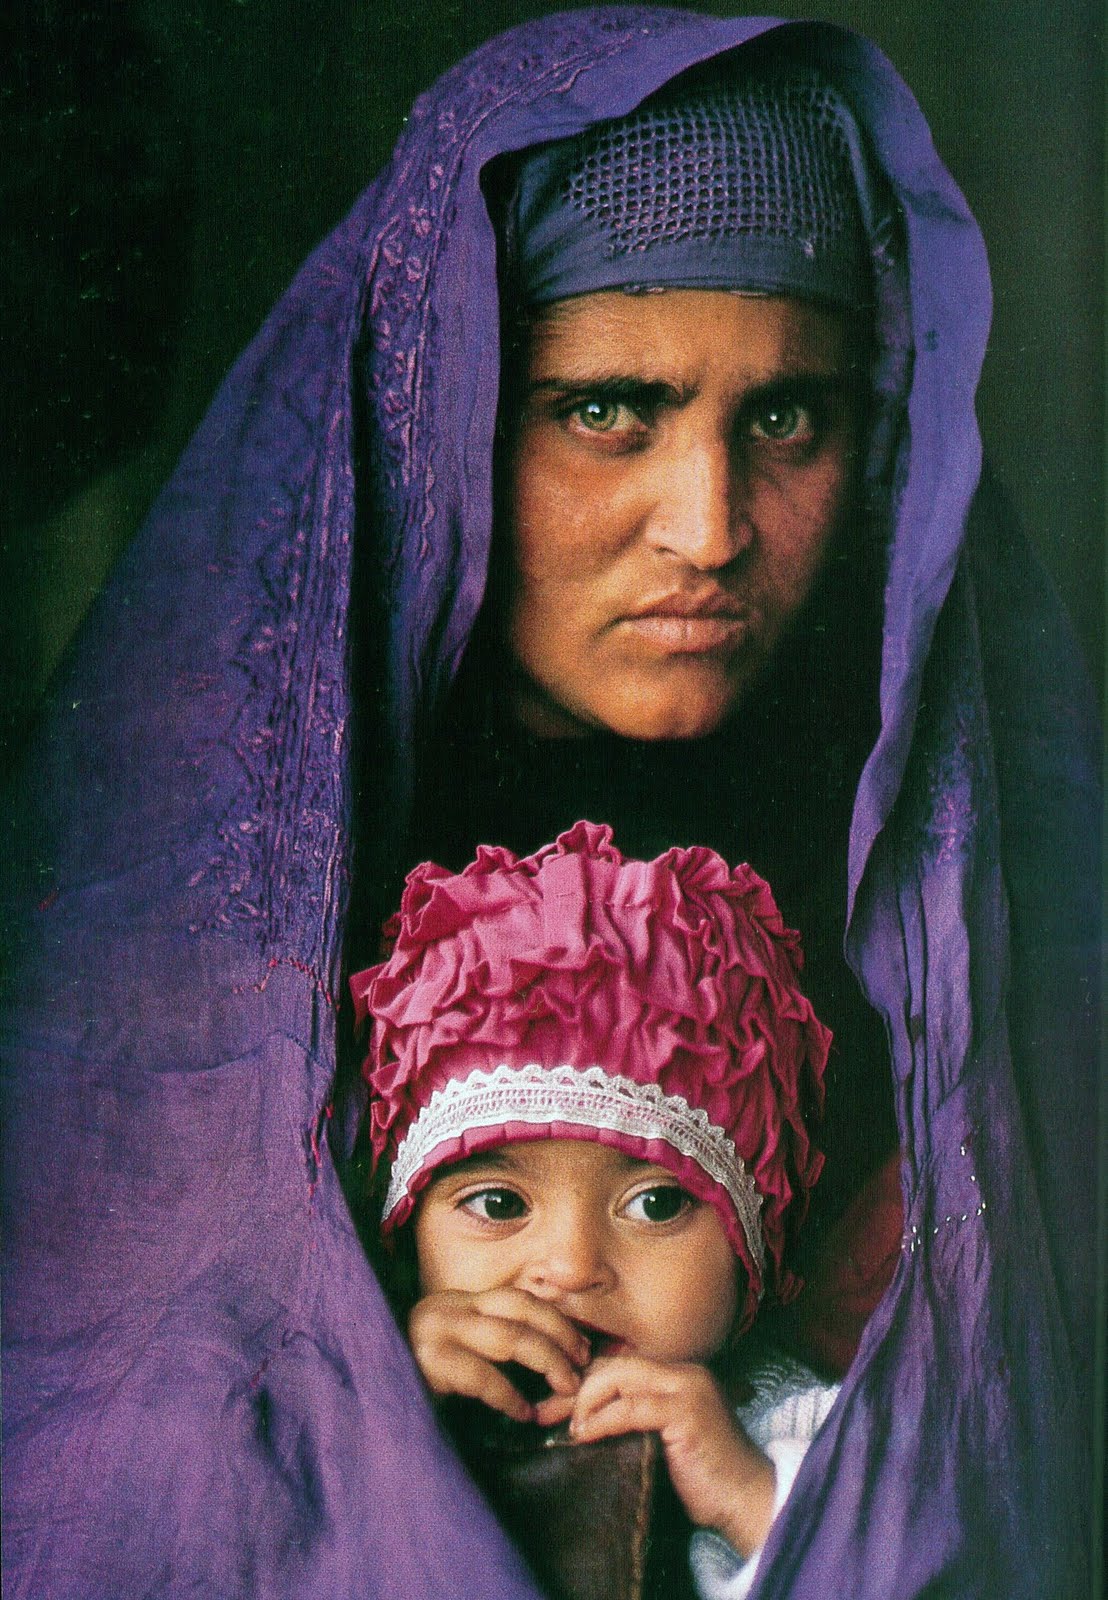 İhtiyat 2002 yılında McCurry, Şarbat Gula'yı tekrar buldu ve fotoğrafını çekti